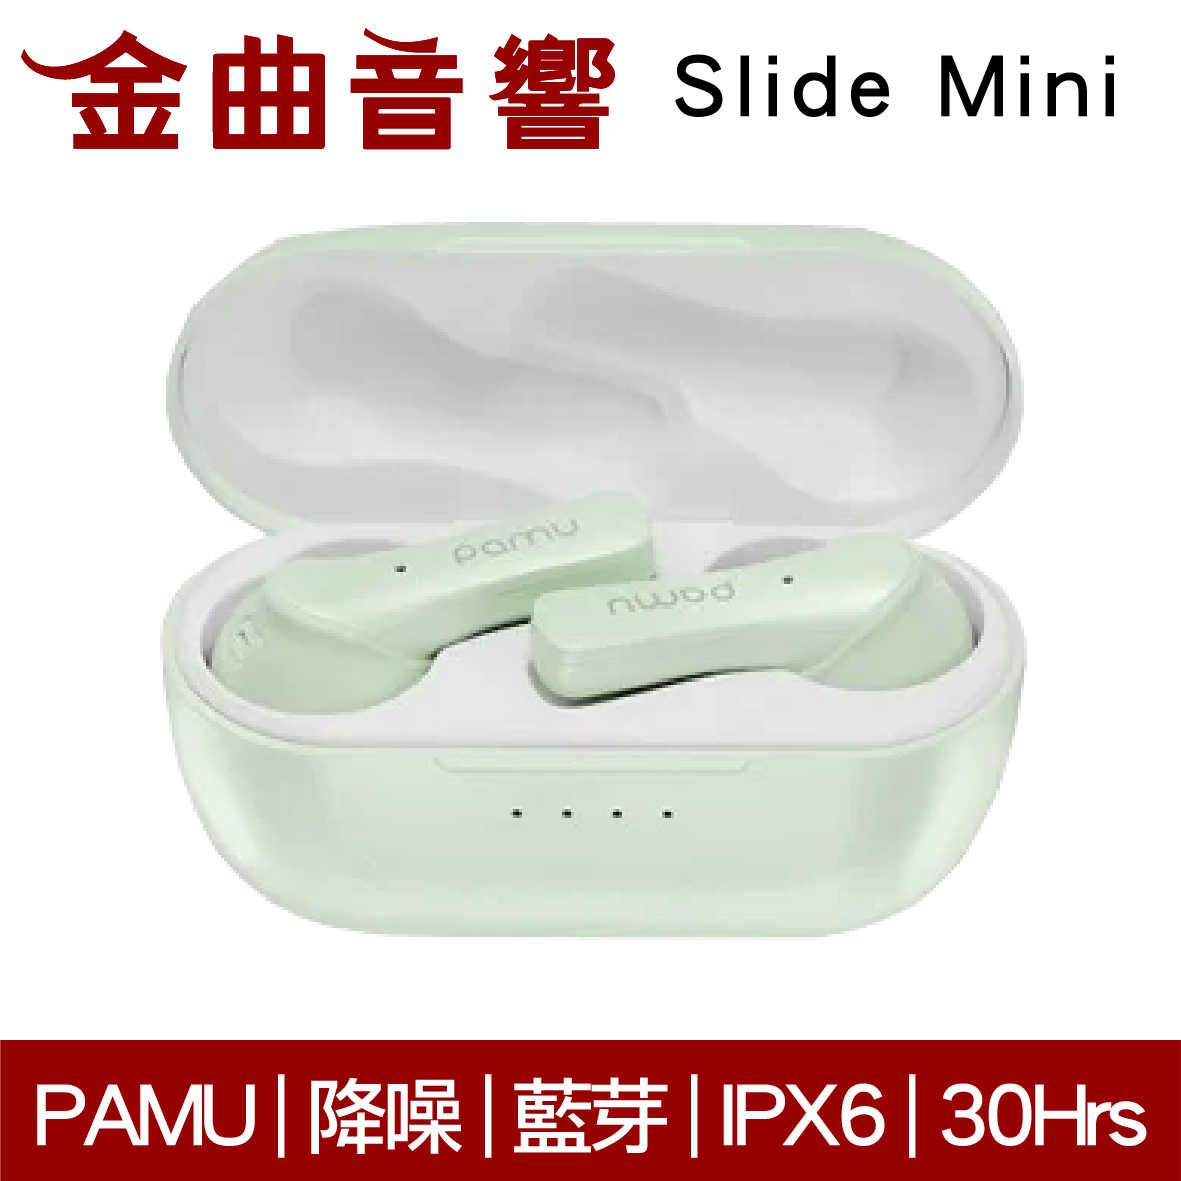 PaMu Slide Mini 綠 降噪 IPX6 通話 雙麥克風 真無線 藍芽 耳機 | 金曲音響